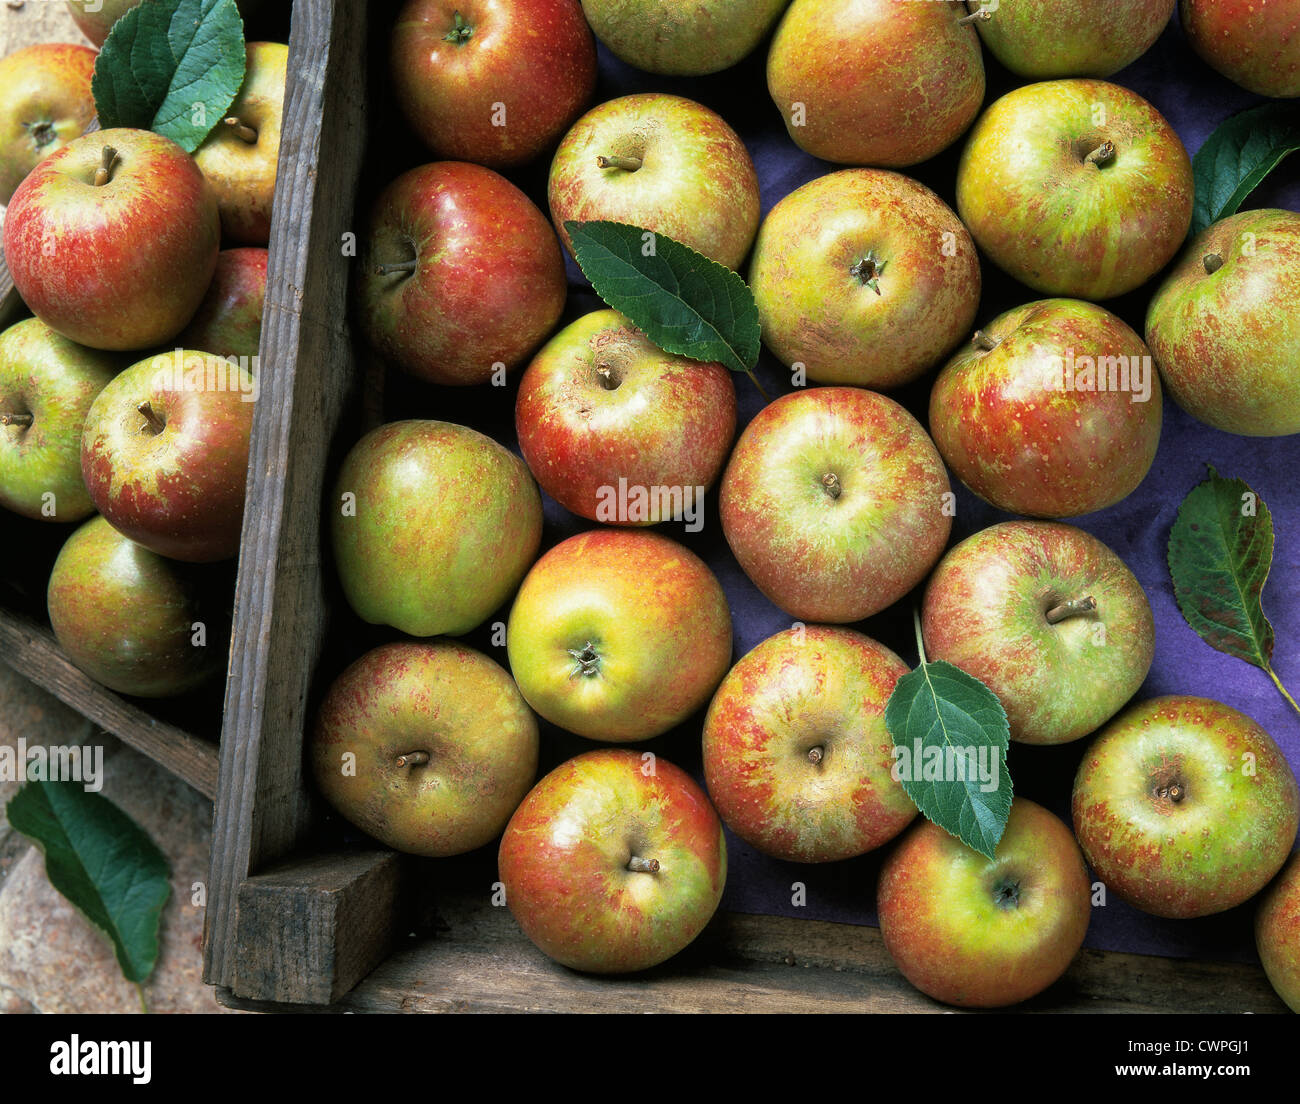 Malus domestica 'Cox's orange pippin', Harvested apples. Stock Photo